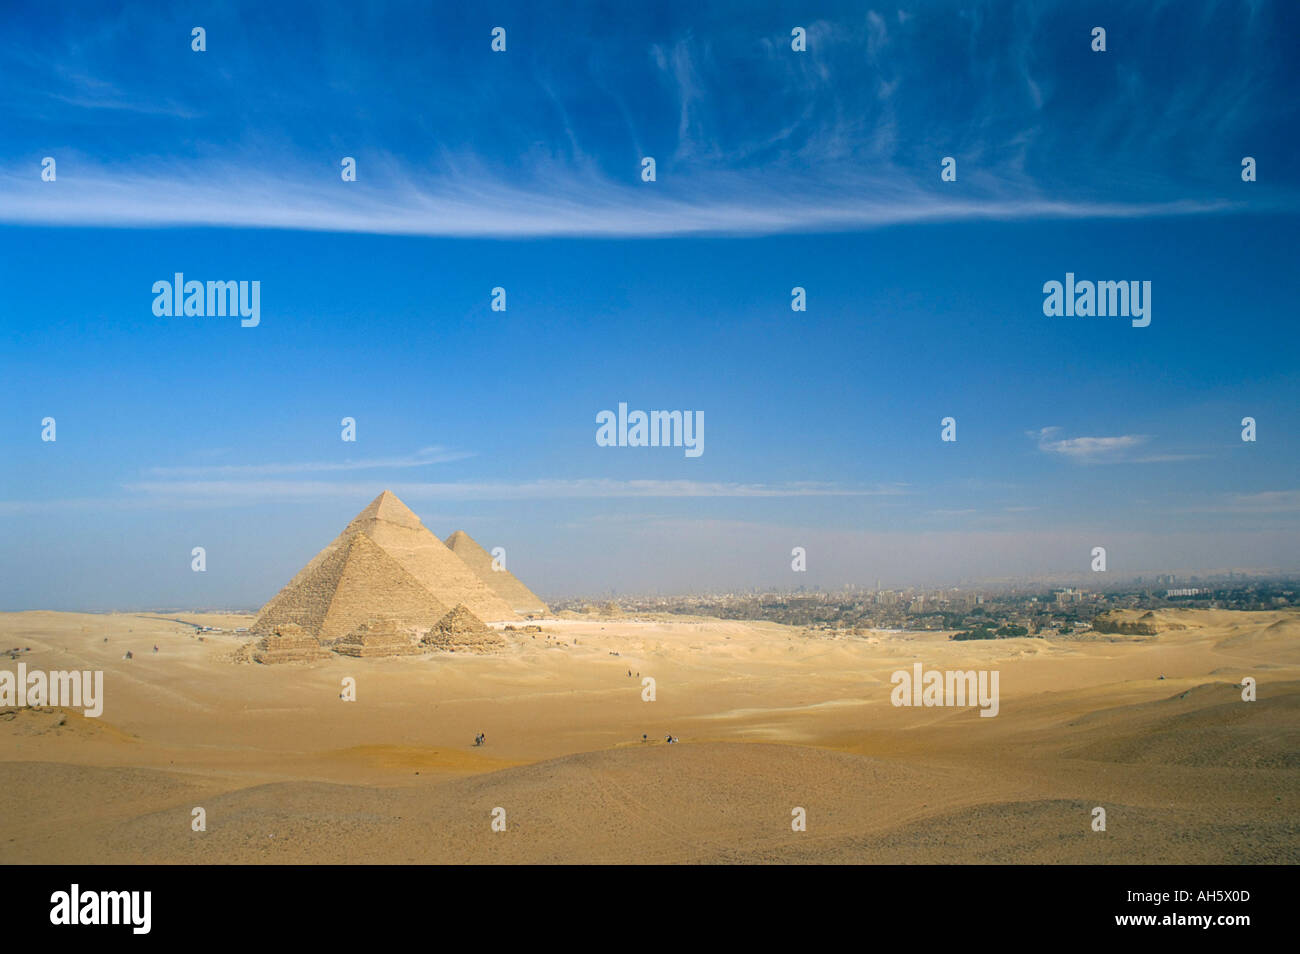 Les Pyramides de Gizeh UNESCO World Heritage Site avec en arrière-plan du Caire Egypte Afrique du Nord Afrique Banque D'Images